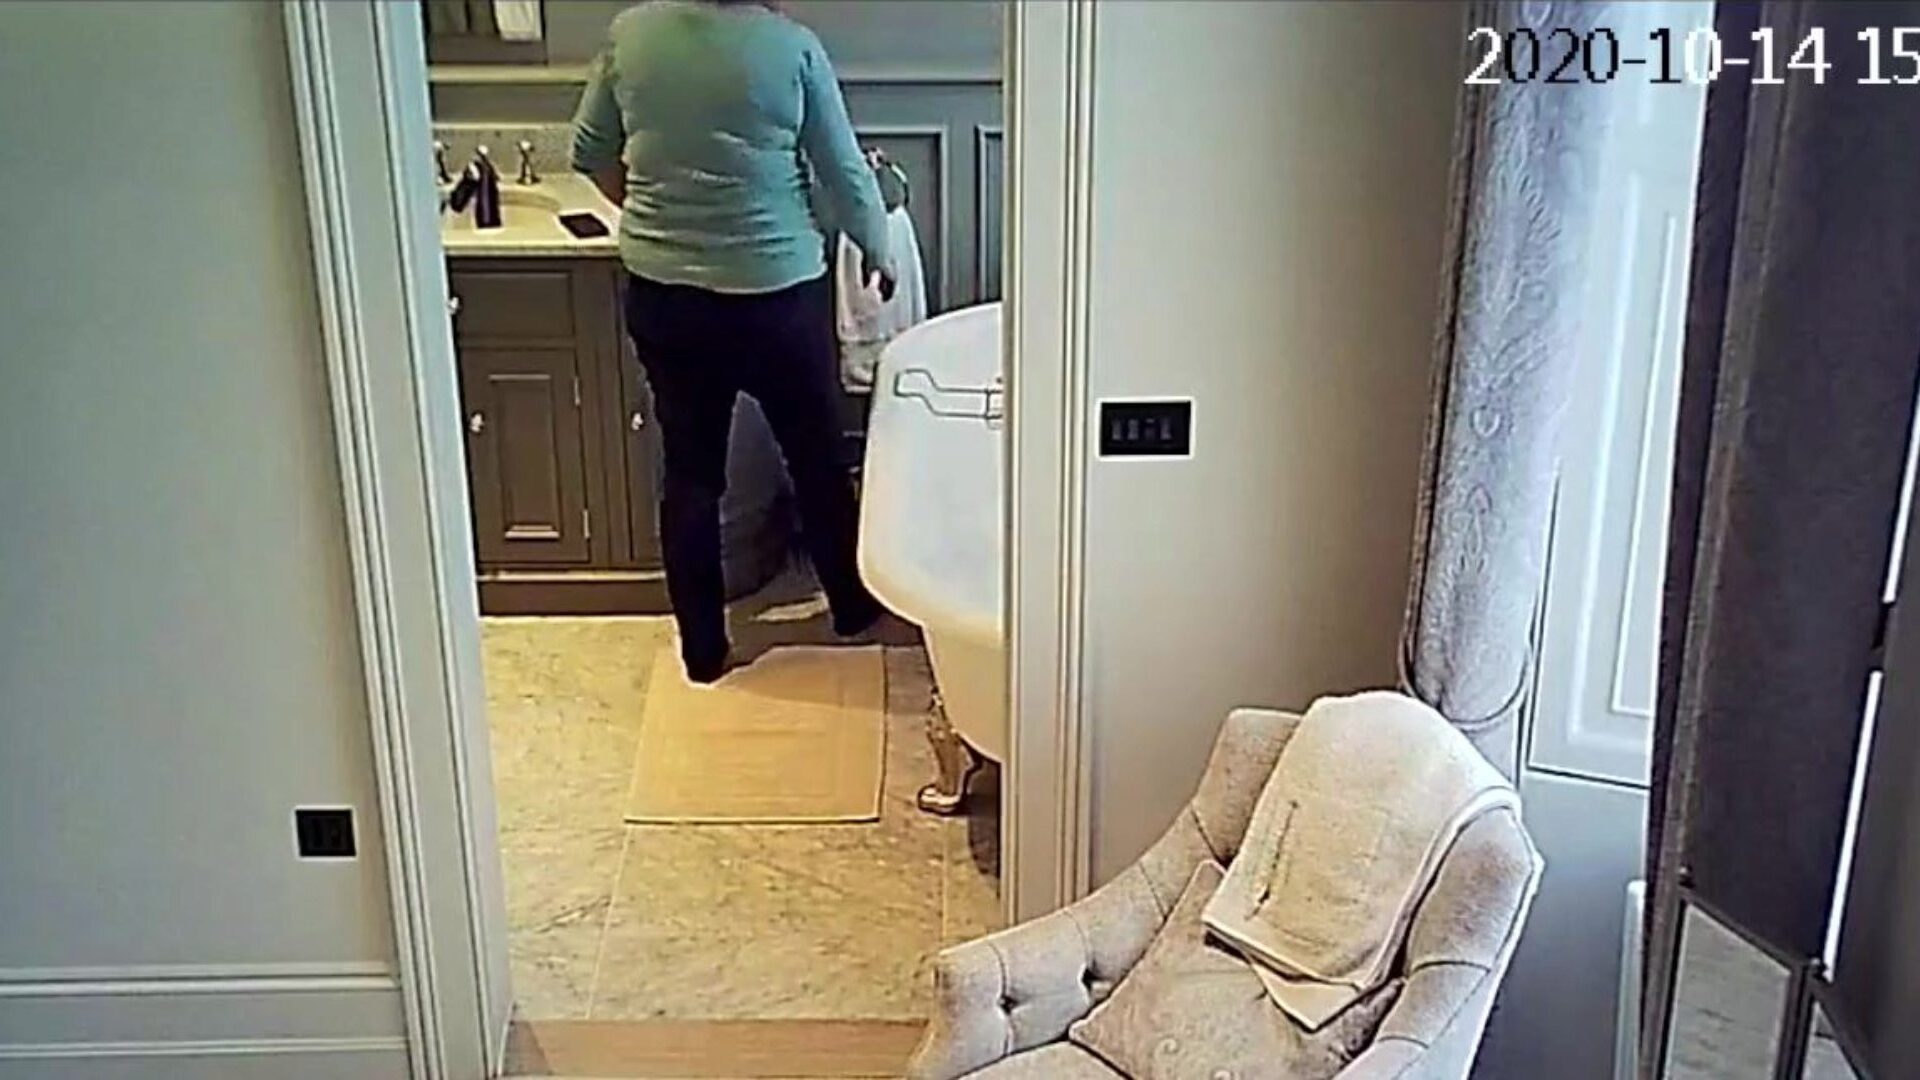 Το ipcam milf washroom ογκώδης ηλικίας παίρνει ένα λουτρό που το μωρό βρίσκεται στην κάμερα ασφαλείας